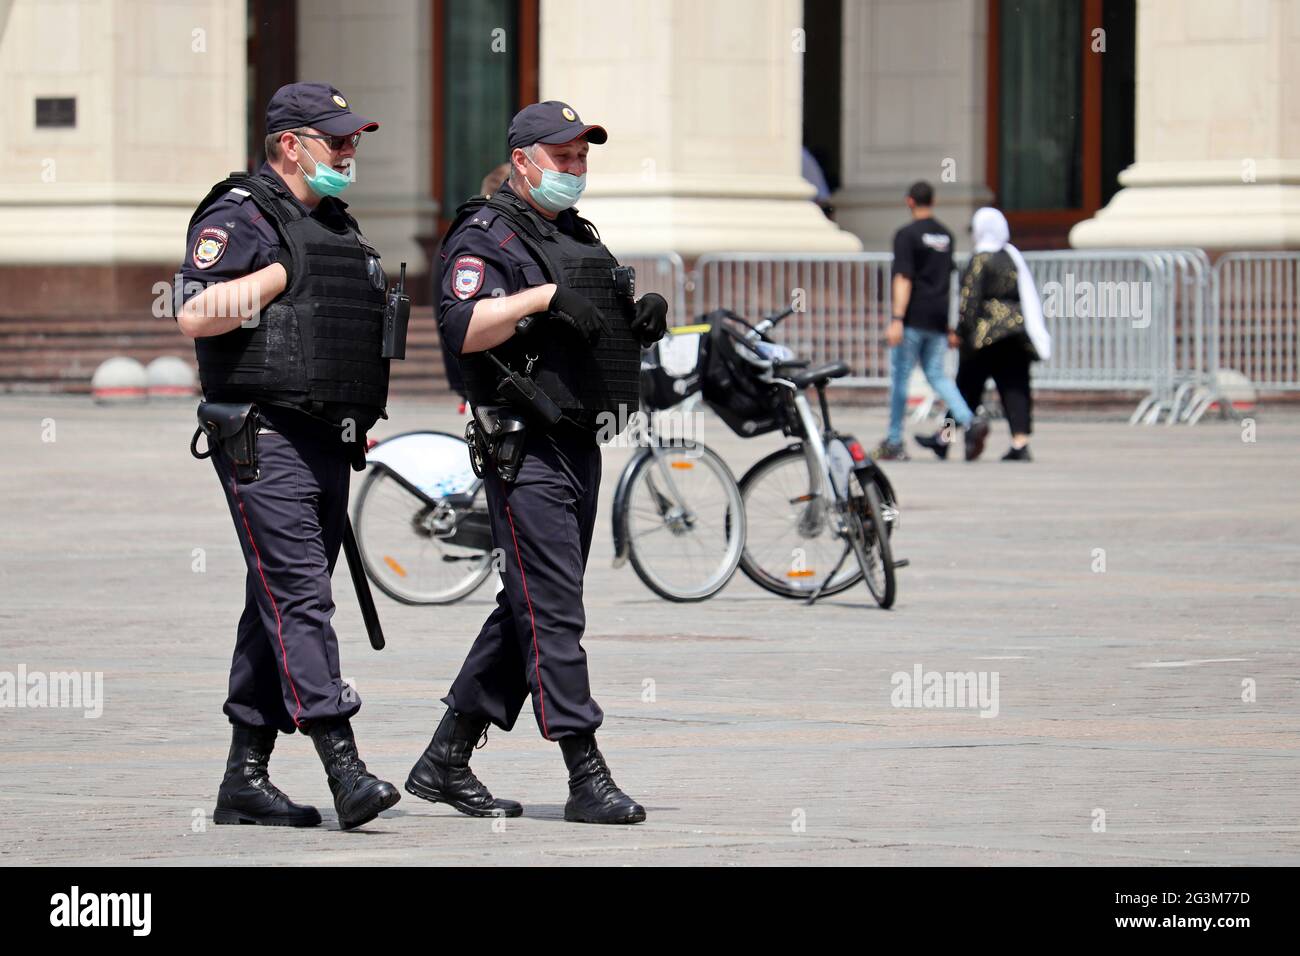 Ufficiali di polizia russi in maschere di faccia e gilet antproiettile pattugliano la strada. Sicurezza degli eventi di massa durante il coronavirus Foto Stock